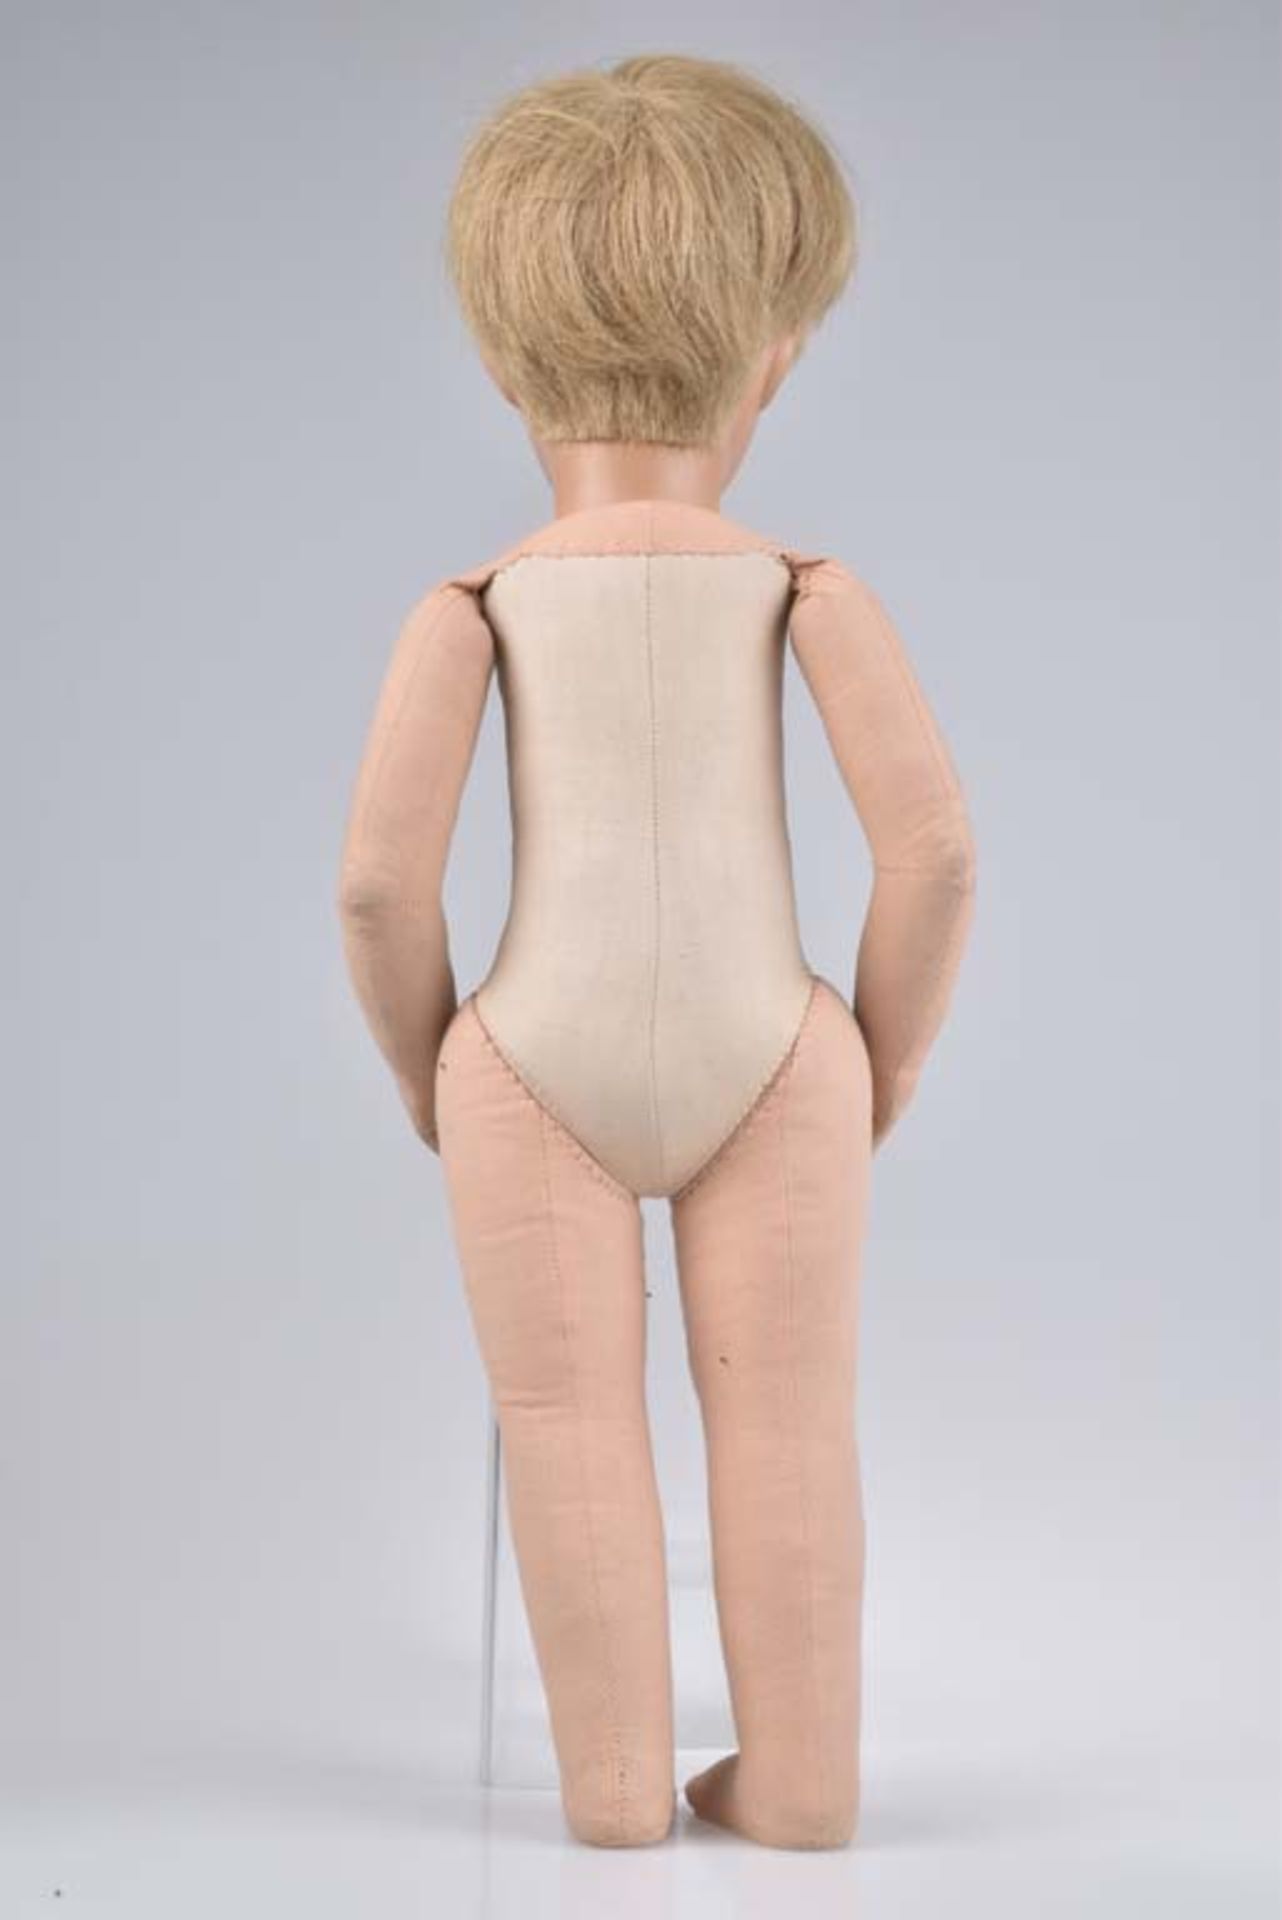 KÄTHE KRUSE Puppe Junge, 1960er Jahre, Kunststoffkopf, dunkelblonde Echthaare, gem. g - Bild 3 aus 4